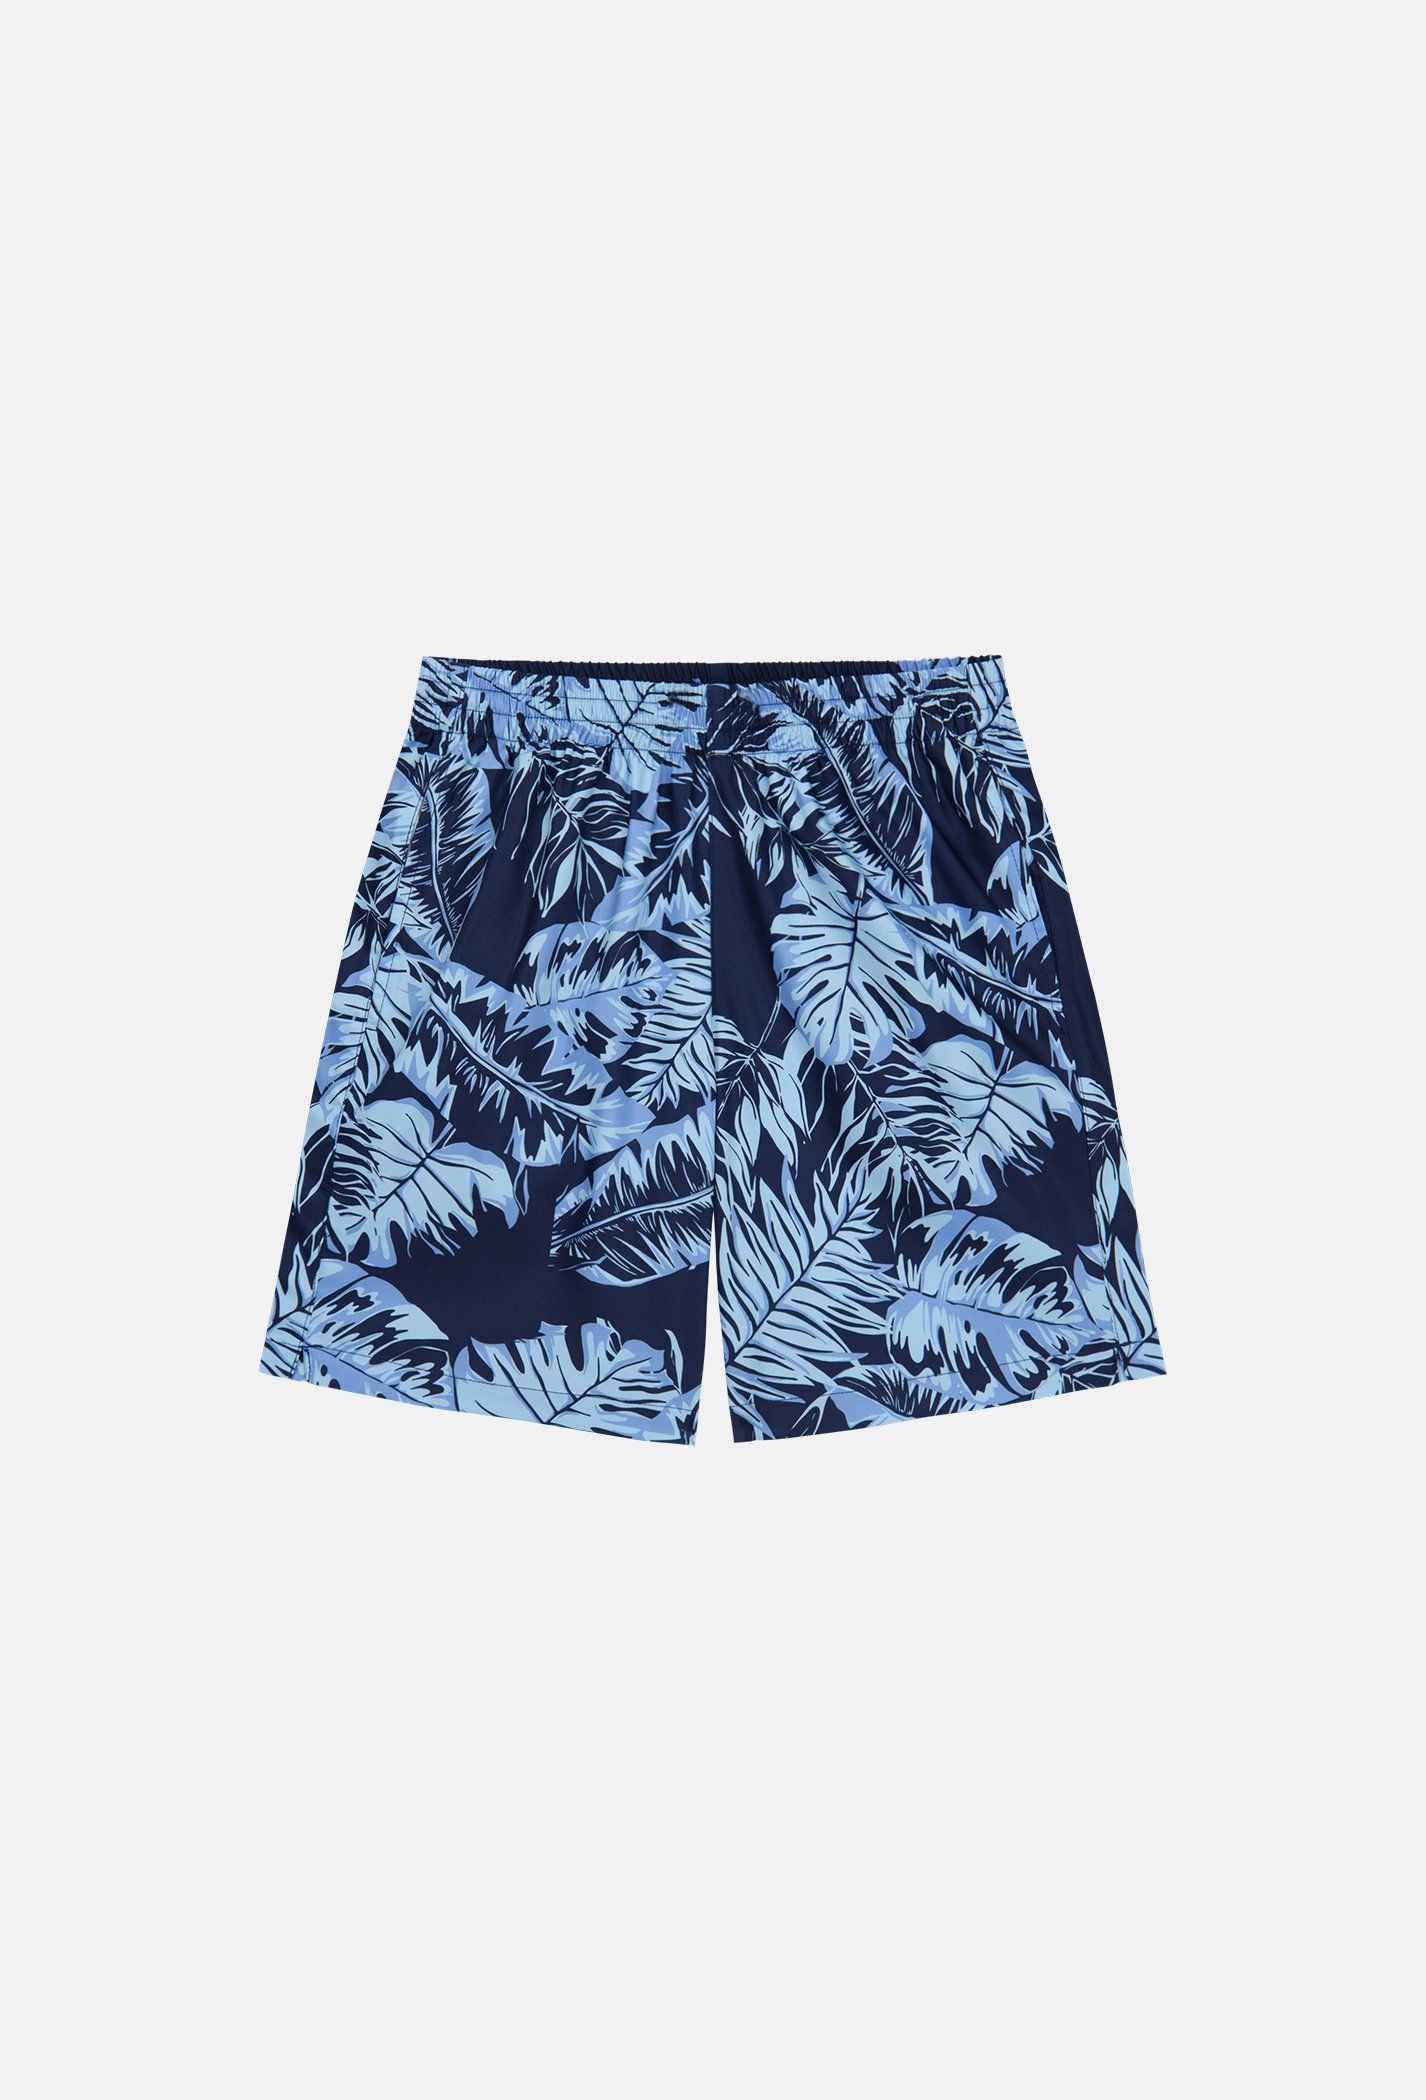 Outlet - Quần shorts nam Classic Beach có túi khoá sau xanh-nhat 2